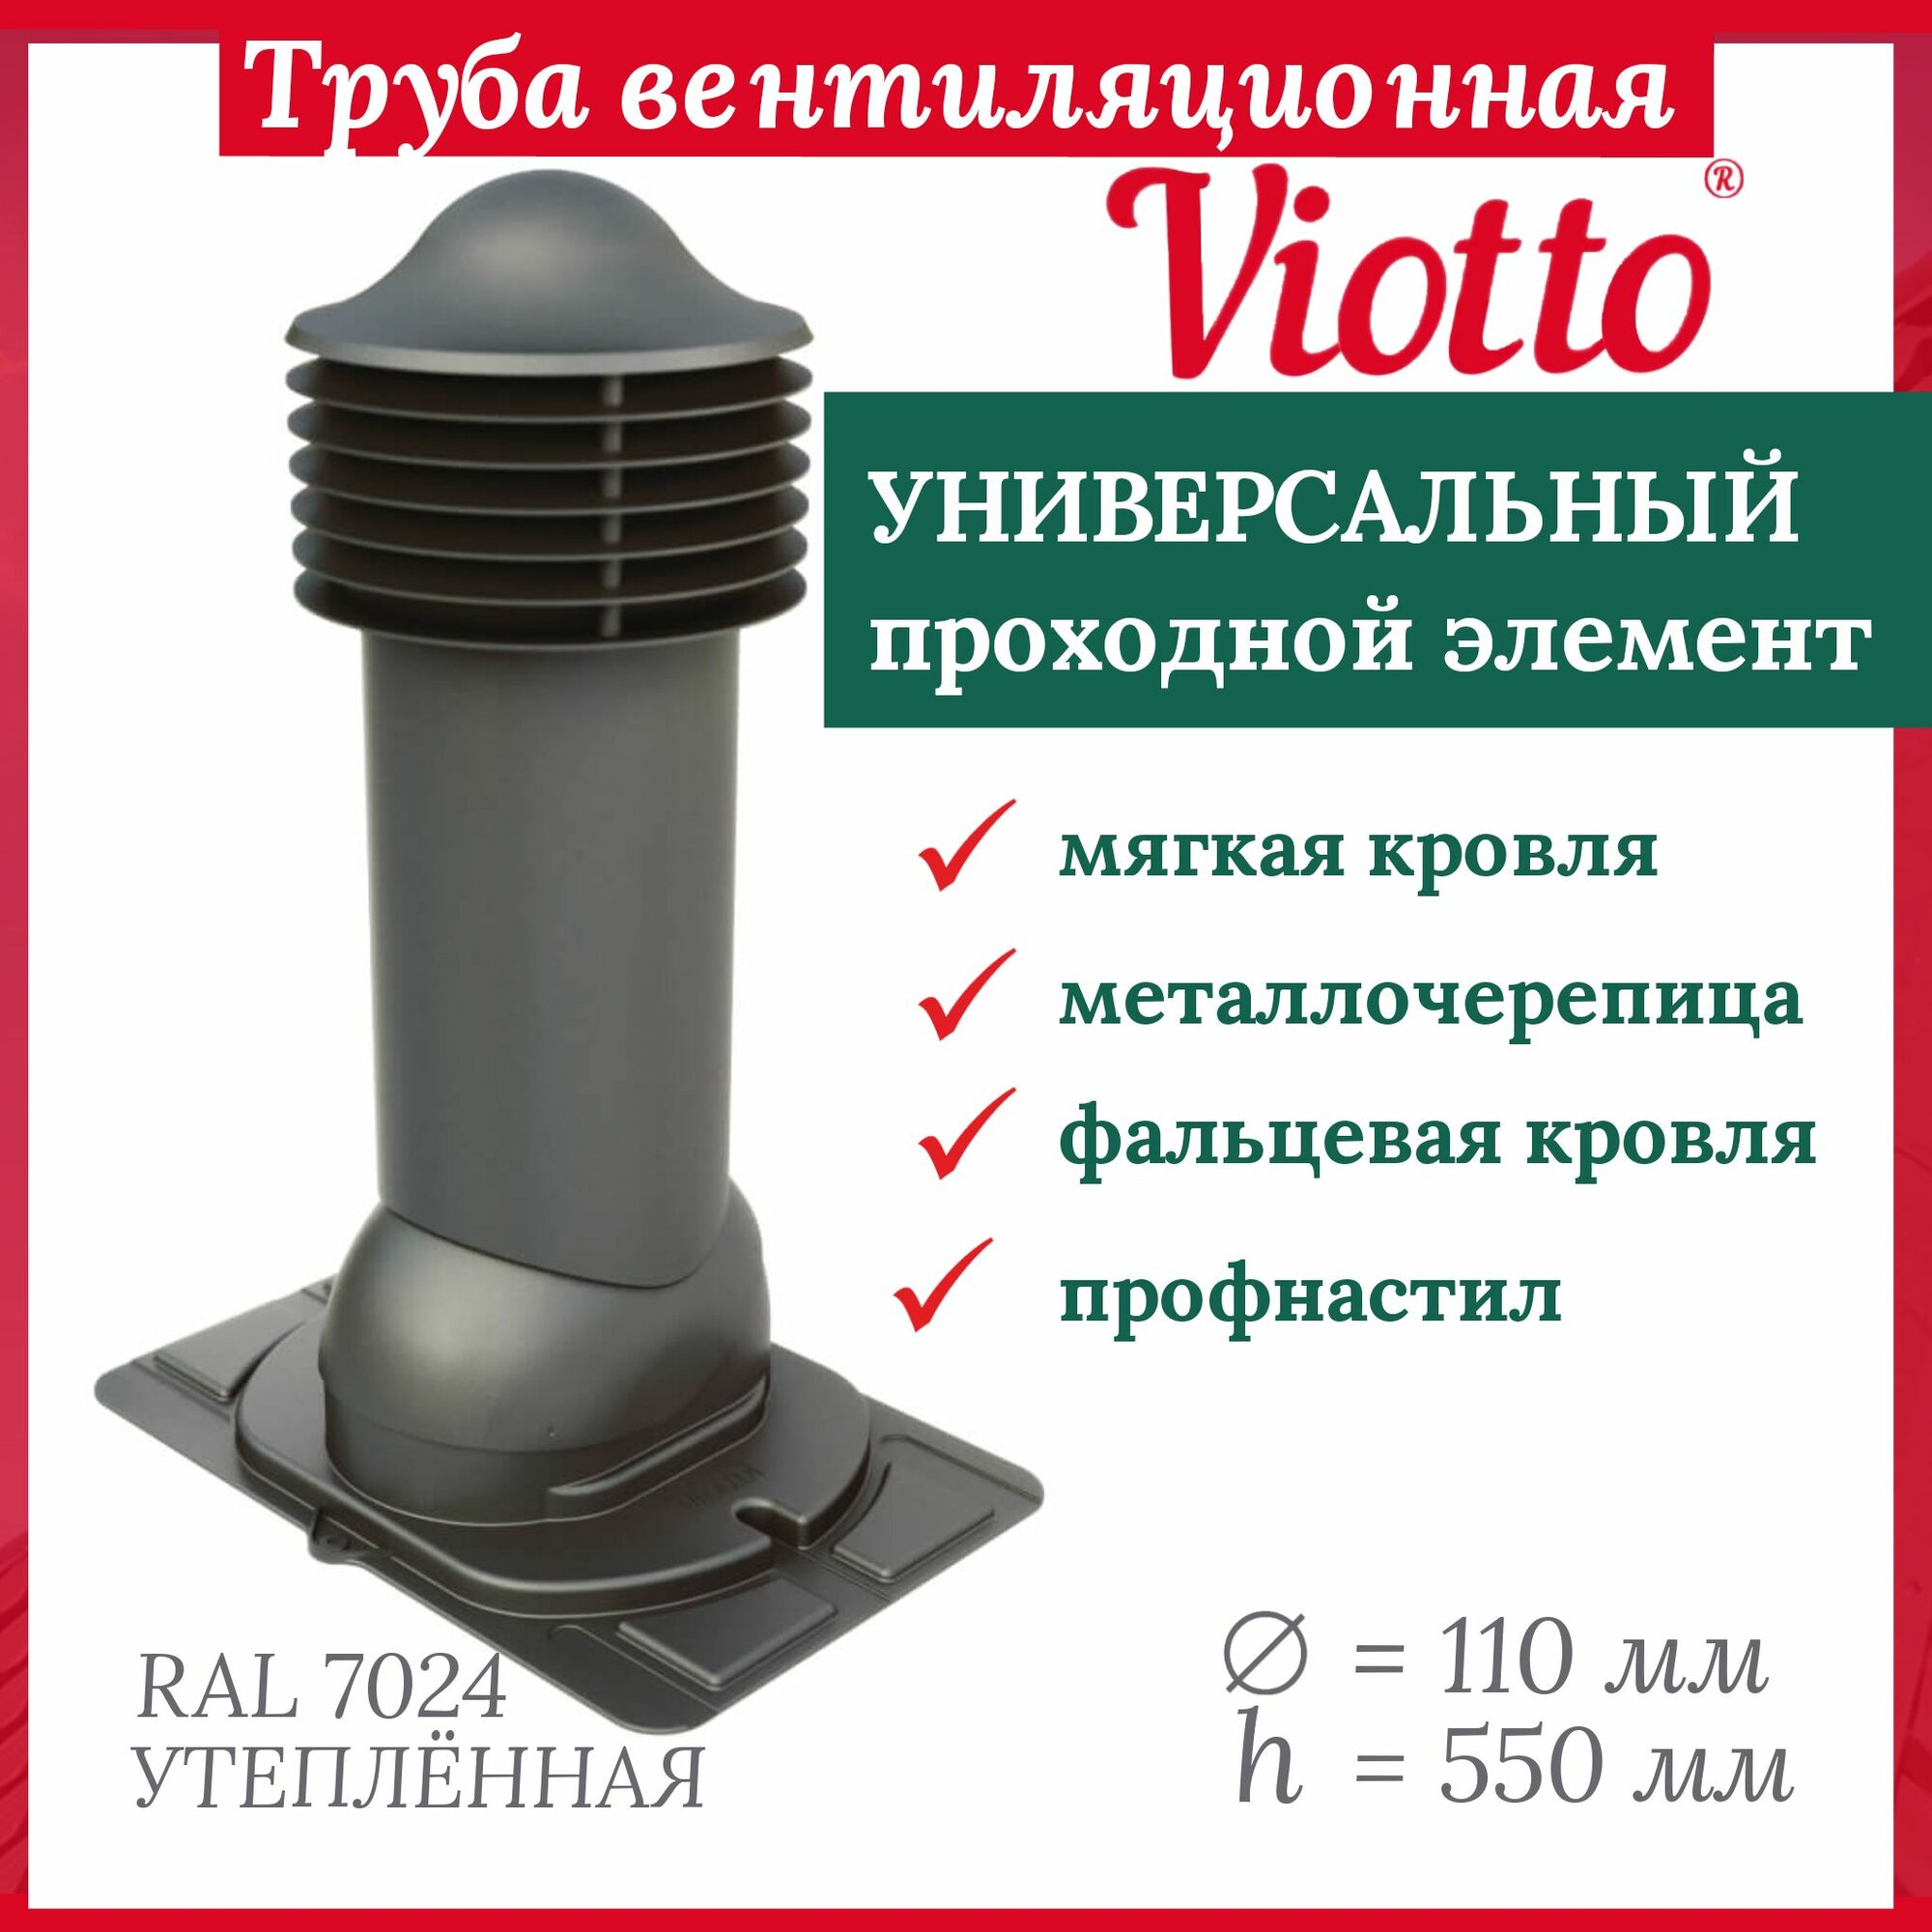 Труба вентиляционная утепленная, Viotto, 110/550 мм, комплект вентиляции с универсальным проходным элементом, RAL 7024.